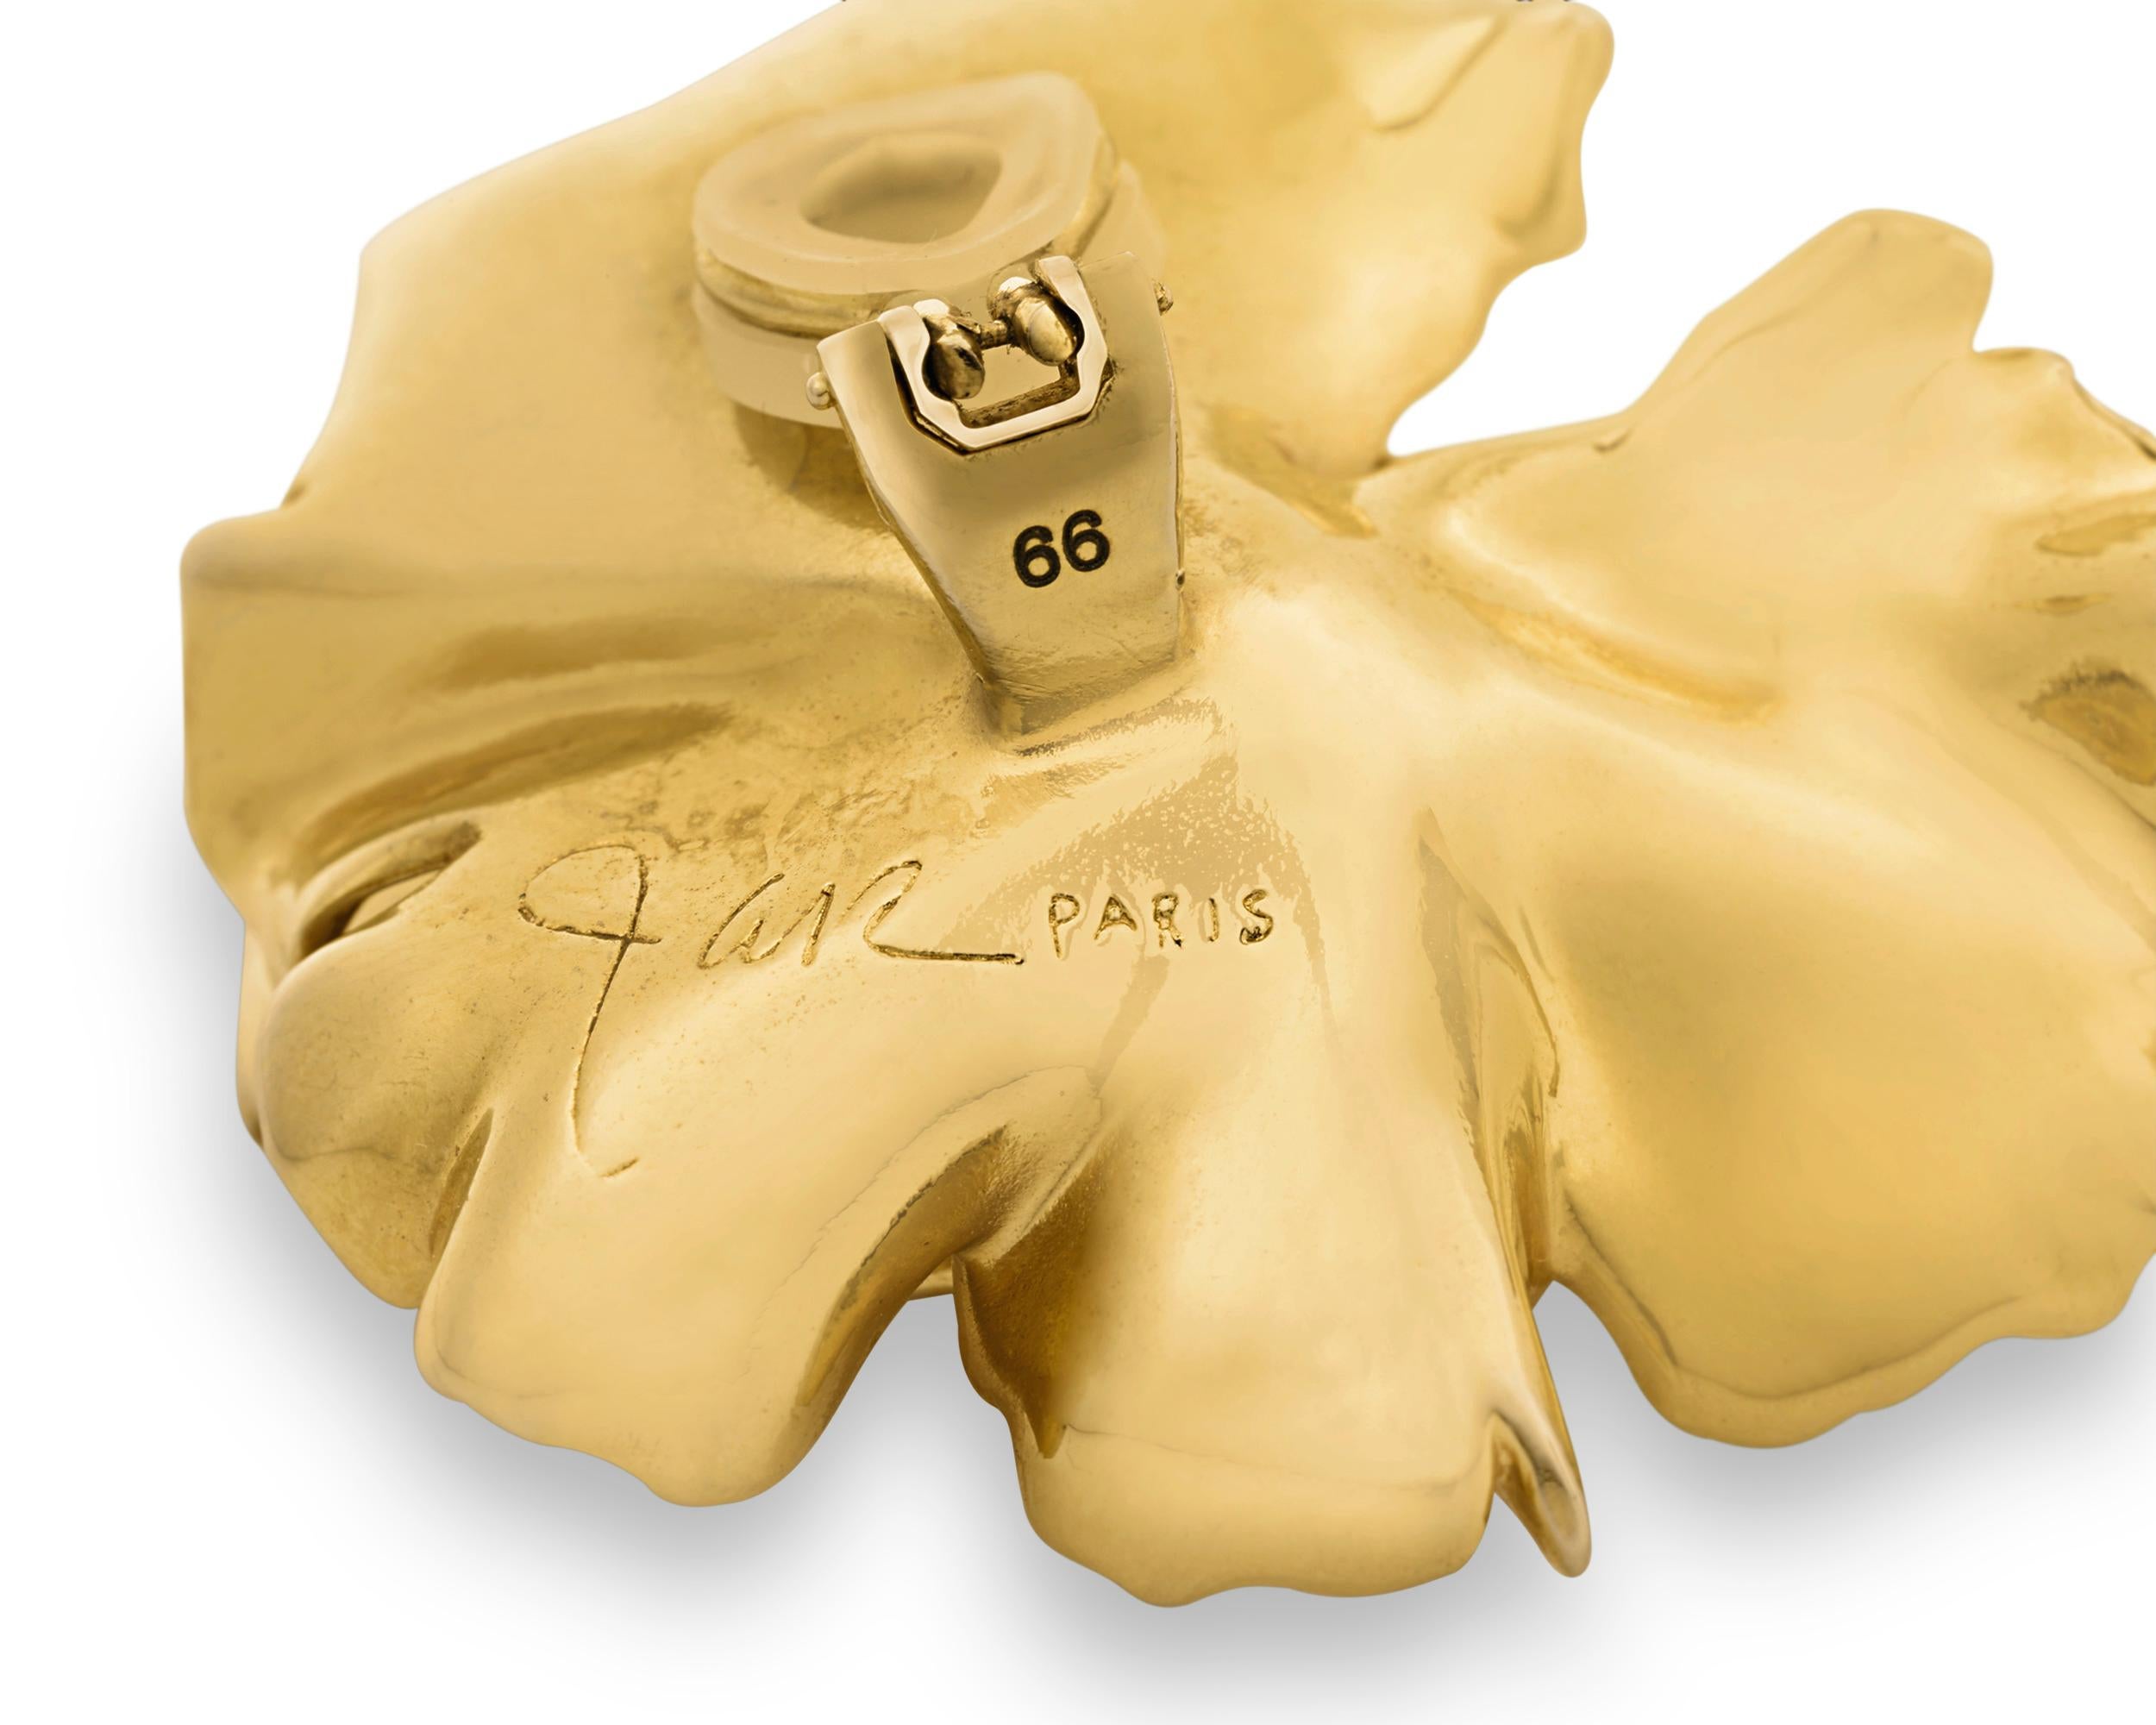 Ces étonnantes boucles d'oreilles à clip couleur or du célèbre joaillier Joel Arthur Rosenthal (JAR) incarnent l'art et l'innovation qui ont fait de lui l'un des joailliers les plus célèbres du siècle dernier. Fabriquées en aluminium traité pour